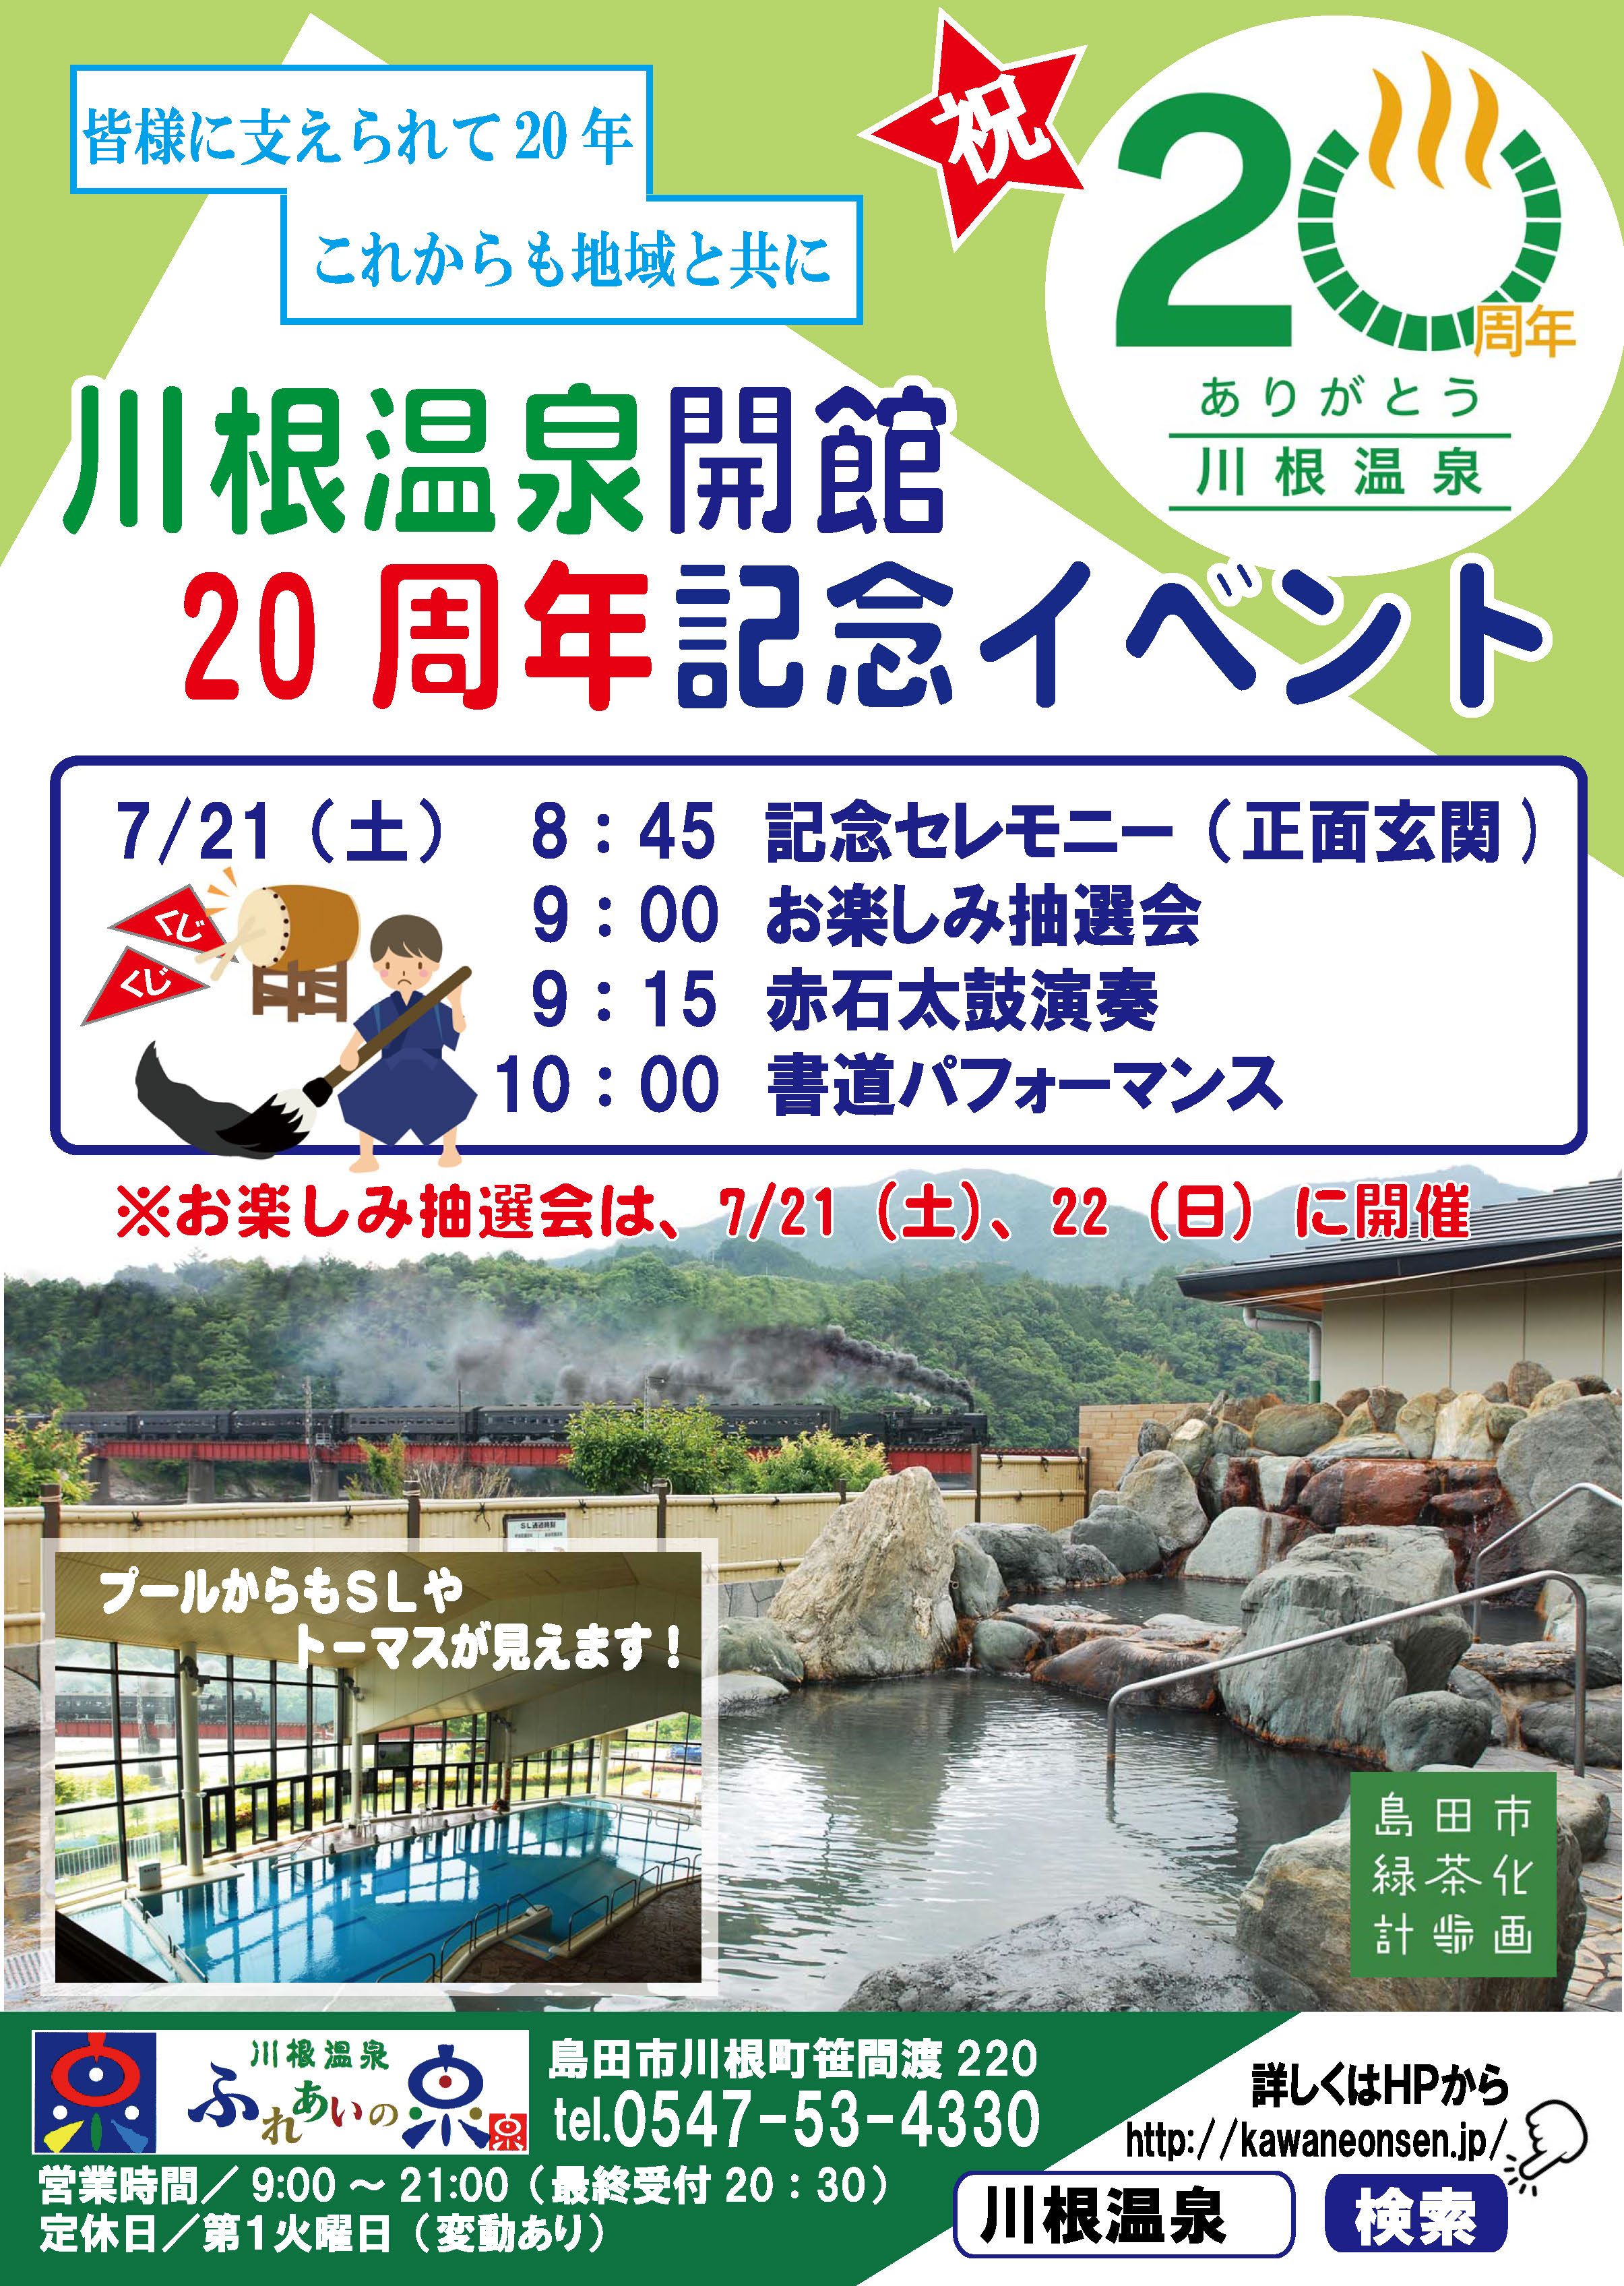 周年イベント 7月イベントカレンダー 公式 川根温泉 ふれあいの泉 Slが見える天然温泉